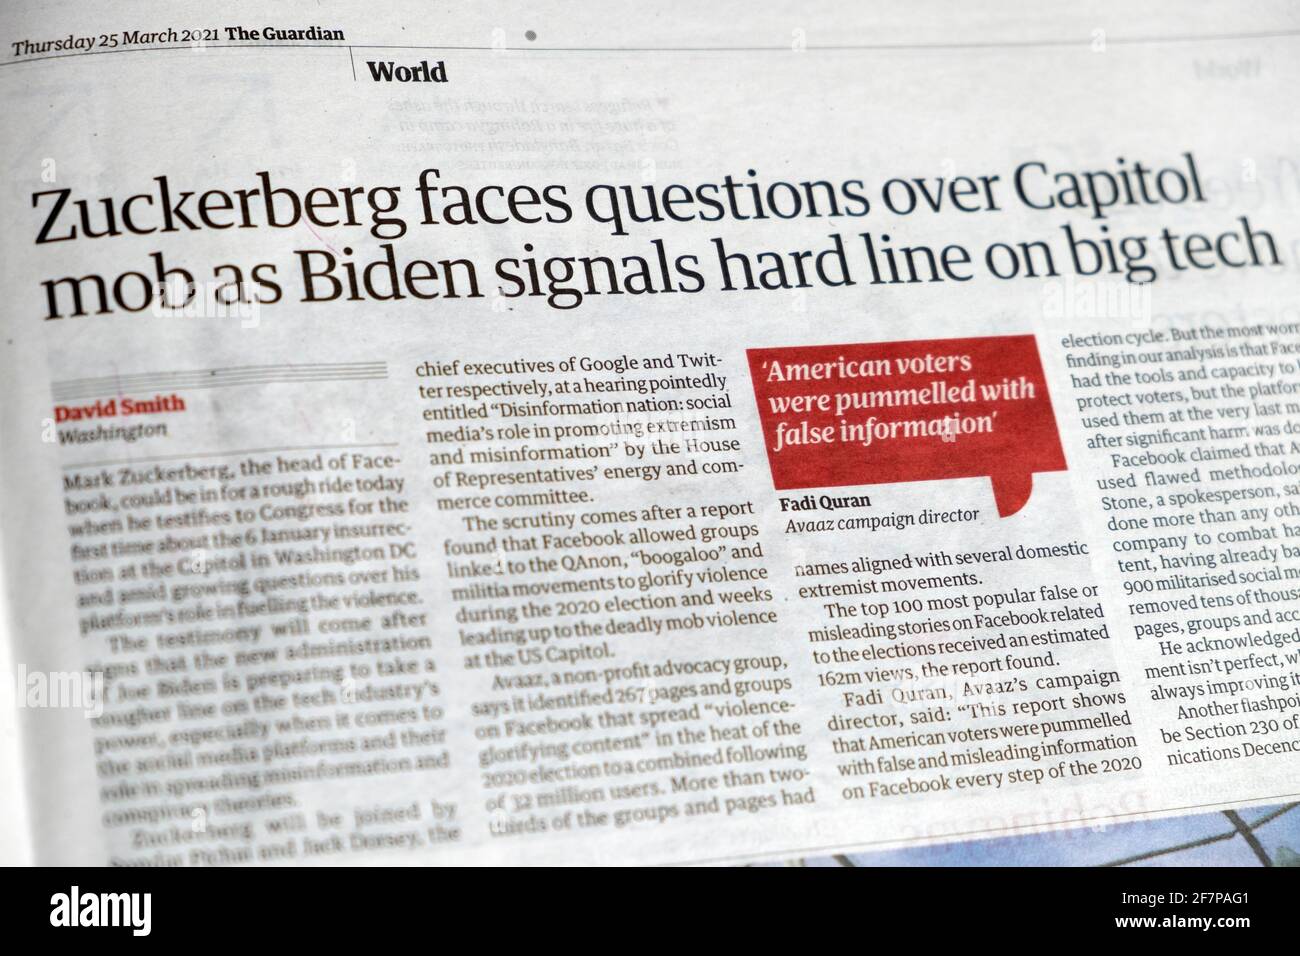 Zuckerberg steht vor Fragen über den Capitol-Mob, wie Biden hart signalisiert Zeile zum Schlagzeilen-Artikel der Big Tech-Zeitung im Guardian 25 März 2021 London UK Stockfoto